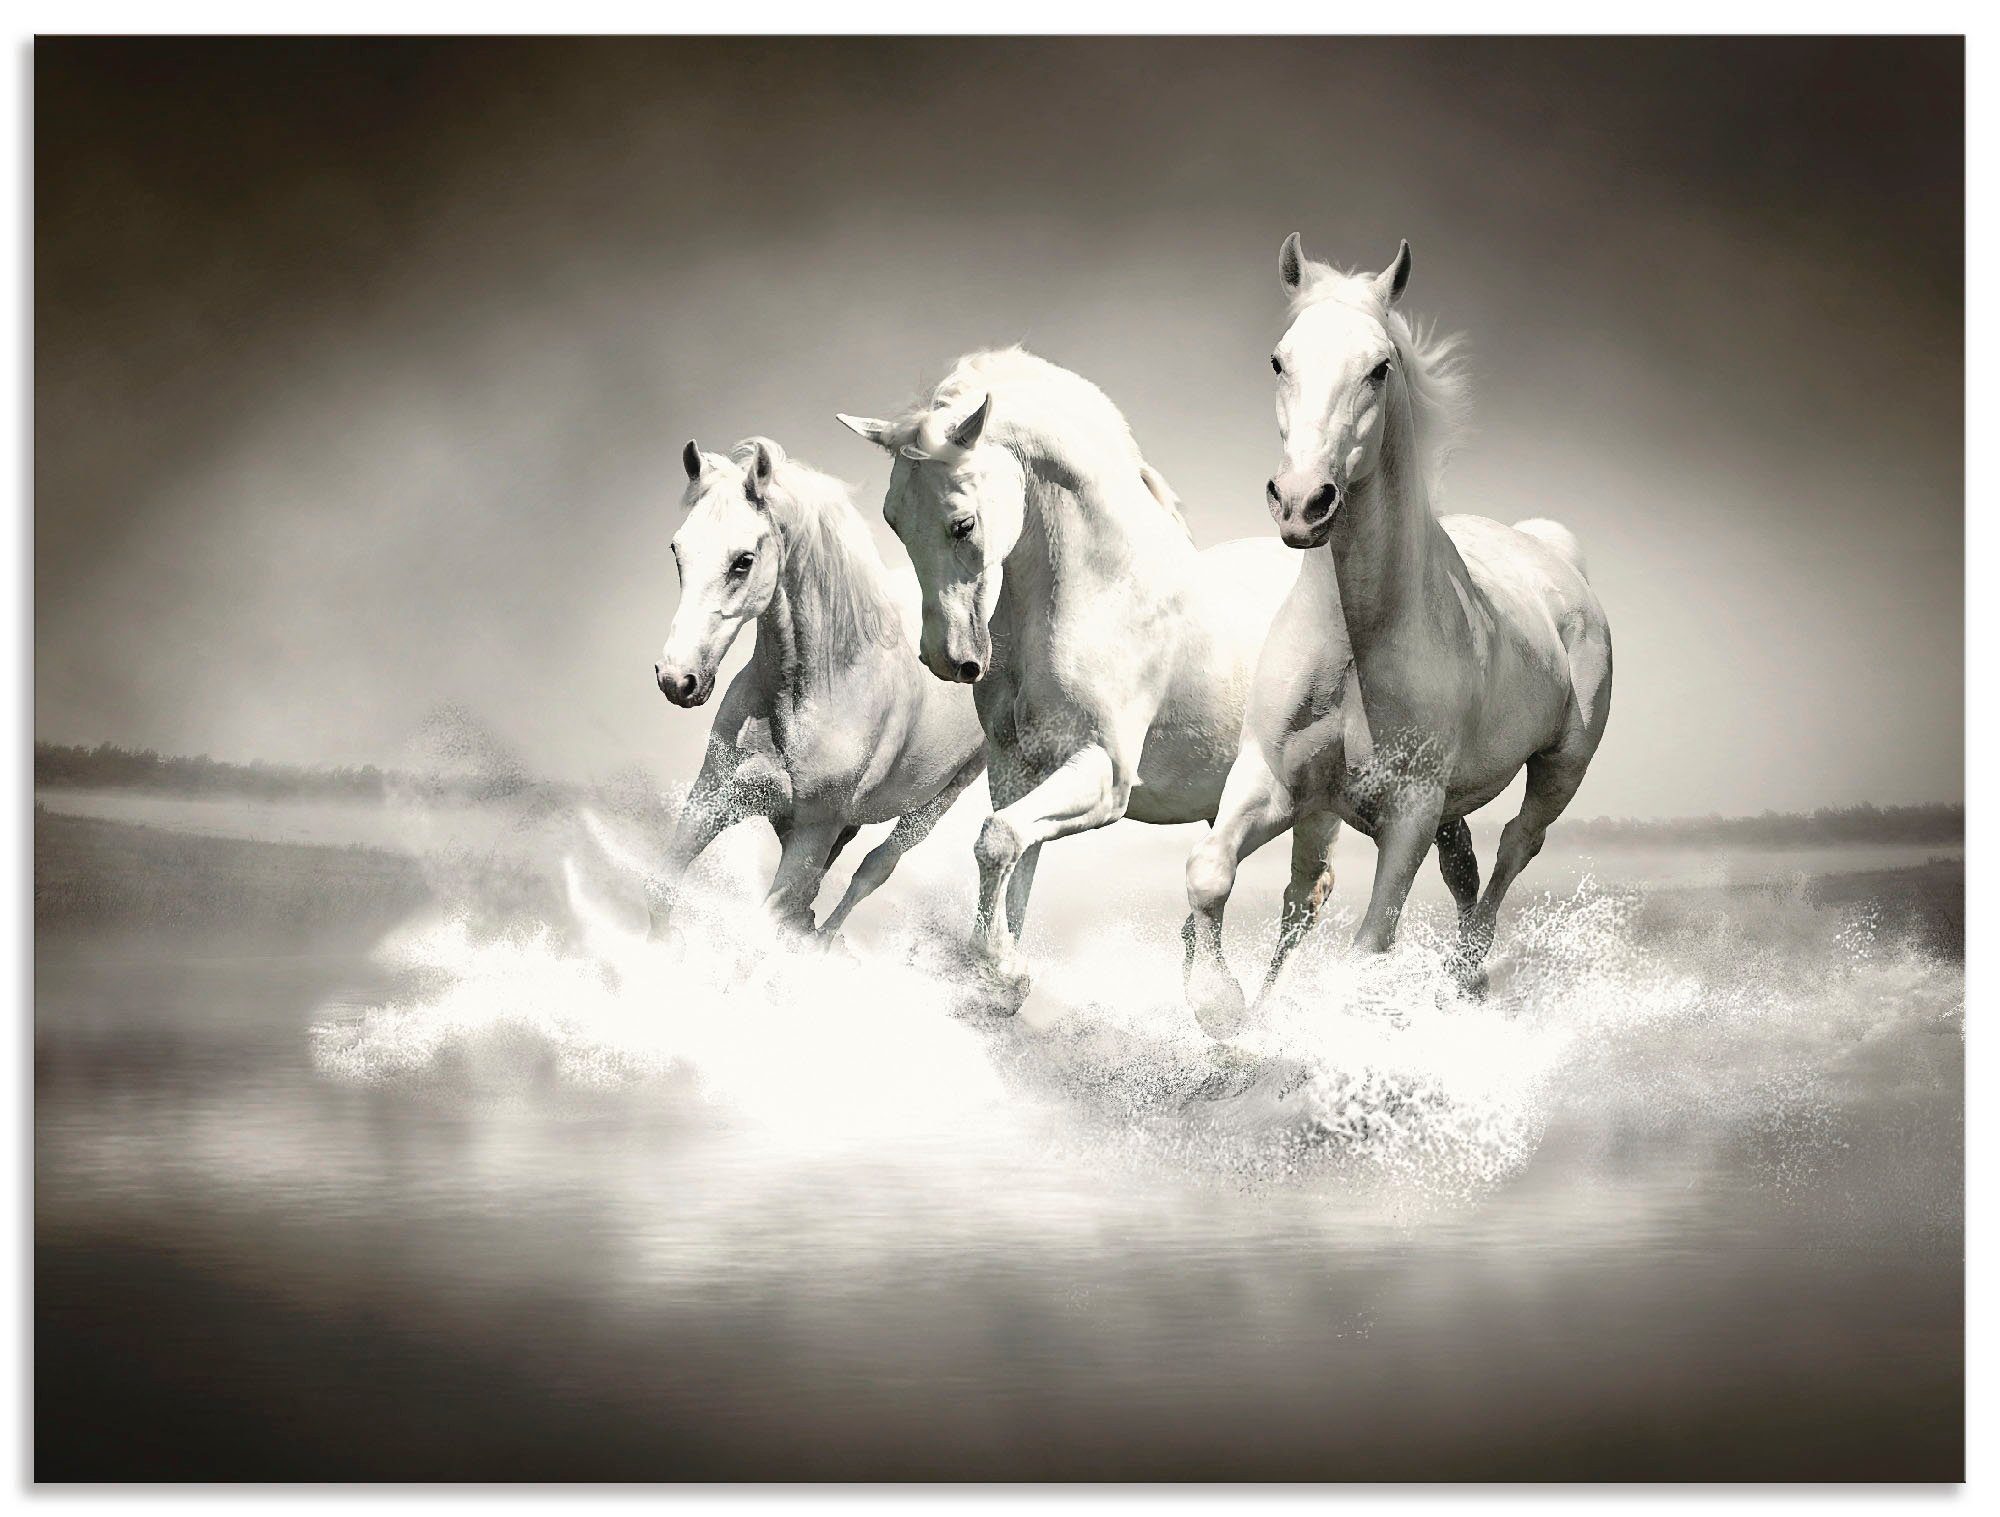 Artland Artprint Kudde van witte paarden in vele afmetingen & productsoorten - artprint van aluminium / artprint voor buiten, artprint op linnen, poster, muursticker / wandfolie oo